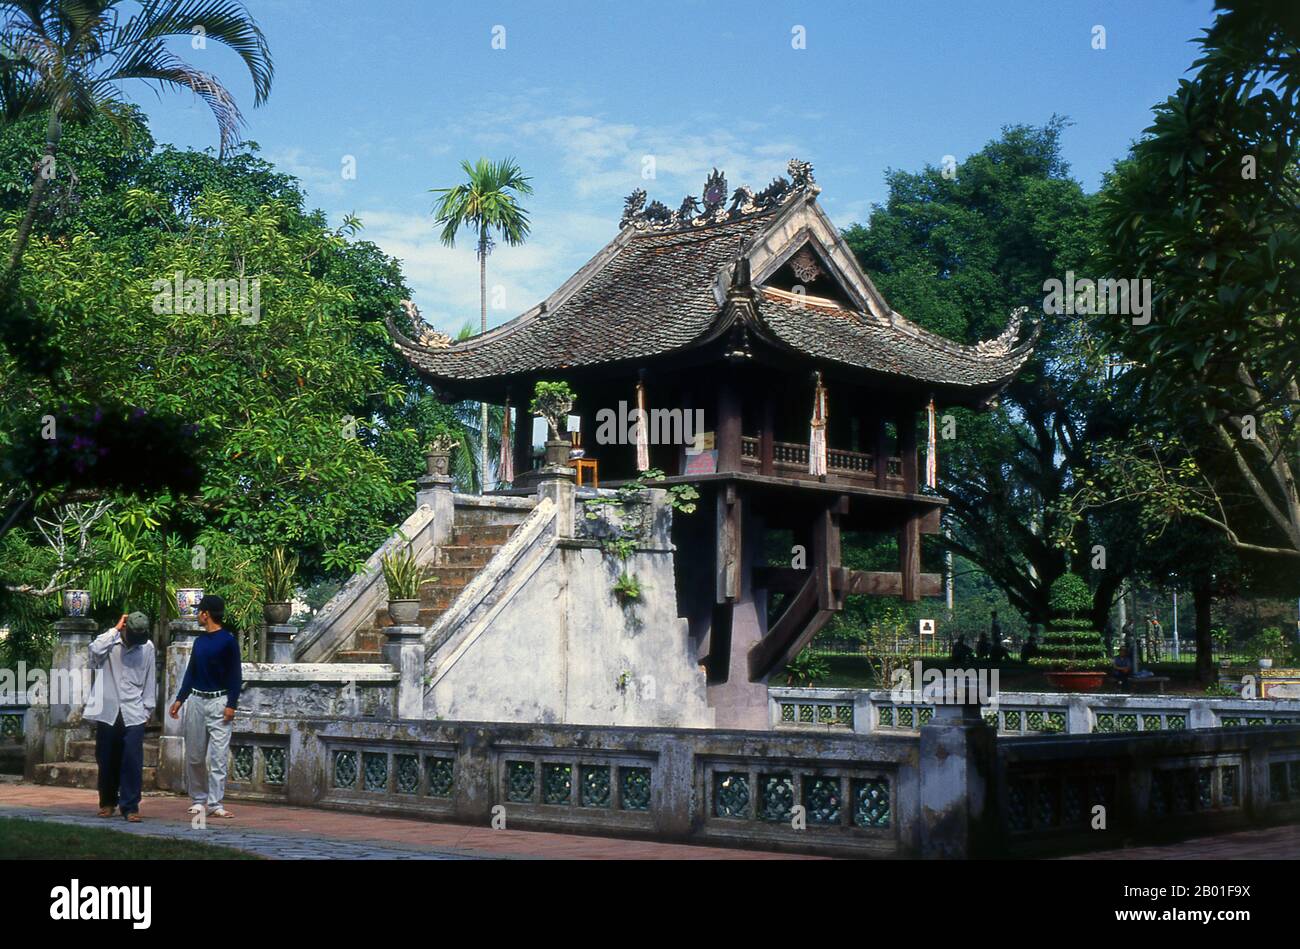 «une pagode pilier» ou Chua Mot Cot est une icône importante pour la ville de Hanoi. Debout dans la petite pagode Dien Huu, qui date également du XIe siècle, Chua Mot Cot est une pagode en bois construite, comme son nom l'indique, sur un pilier en pierre unique debout dans un étang simple mais élégant de lotus. Le roi Ly Thai Tong (1000 - 1054) a construit à l'origine la Pagode Dien Huu et le Chua Mot Cot en 1049. Selon la légende, le roi, n'ayant pas de fils, a été visité dans ses rêves par la déesse de Mercy Quan Am, qui était assis sur une fleur de lotus et lui a présenté un bébé garçon. Peu après, Ly Thai Tong mariage Banque D'Images